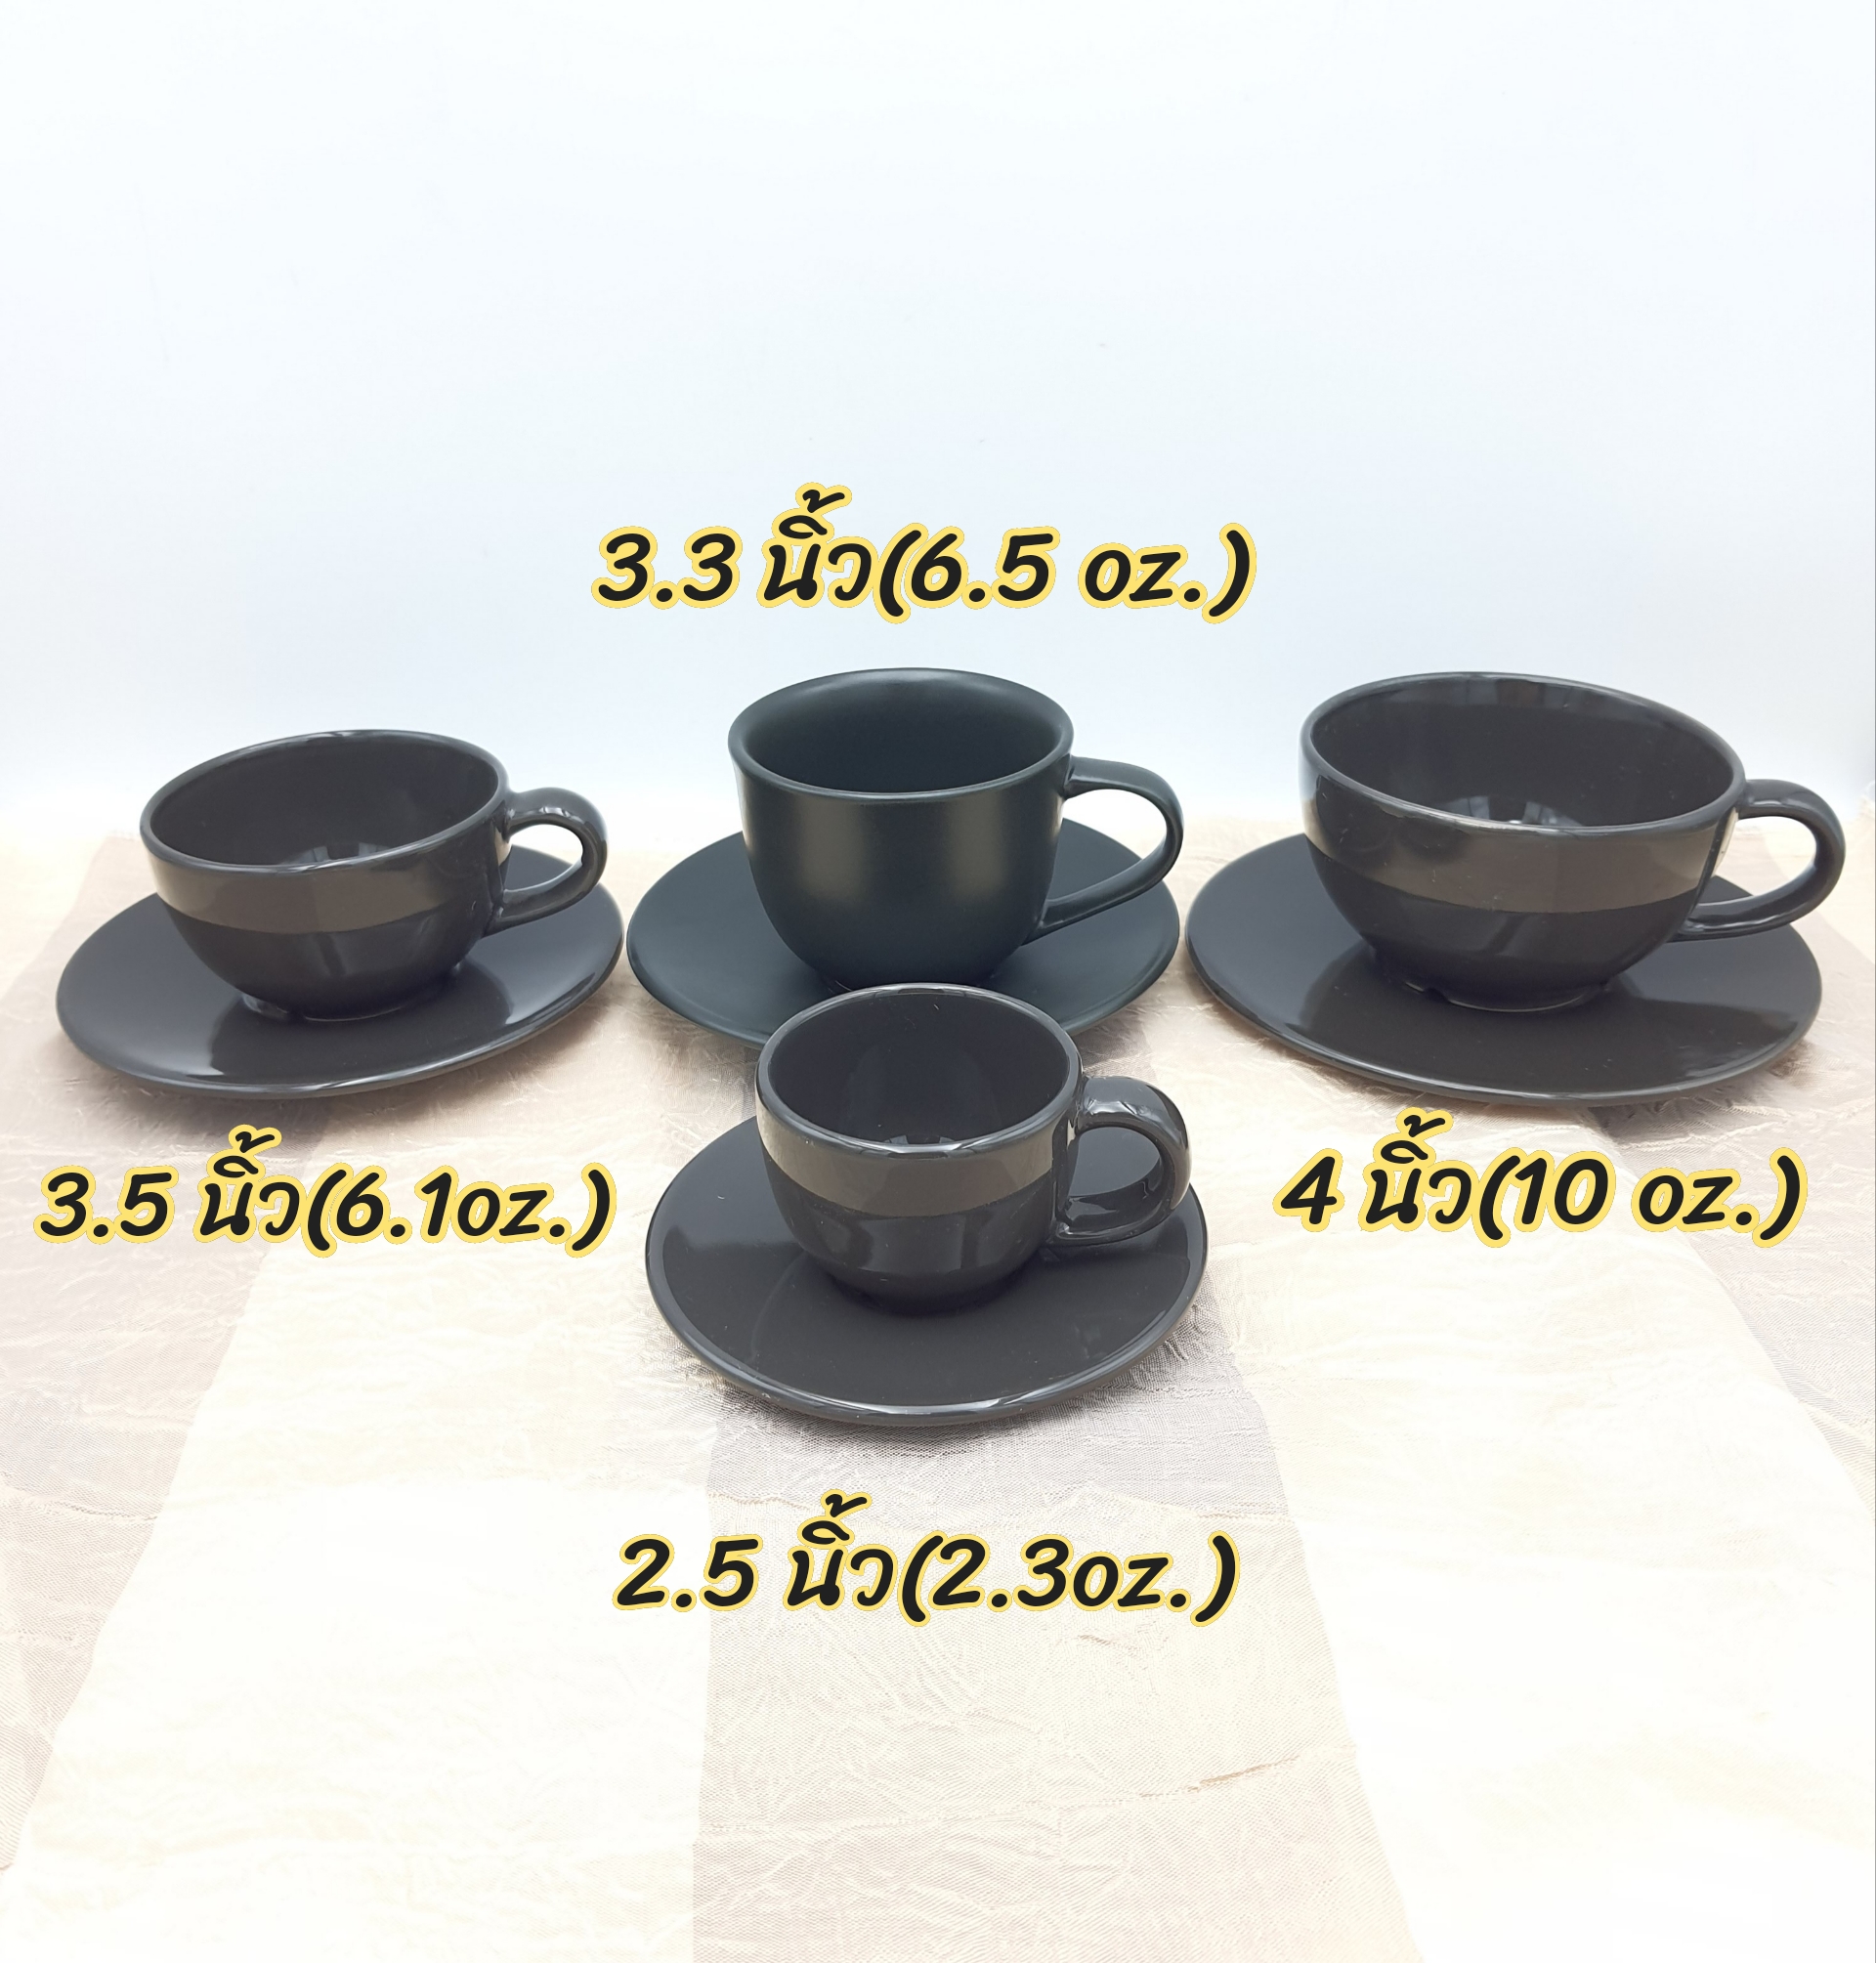 แก้วกาแฟ ถ้วยกาแฟ  แก้วกาแฟร้อน พร้อมจานรอง เซรามิค สีดำ  มี 4 ขนาด  แก้วกาแฟ 2.5 นิ้ว 3.3 นิ้ว 3.5 นื้ว และ 4 นิ้ว